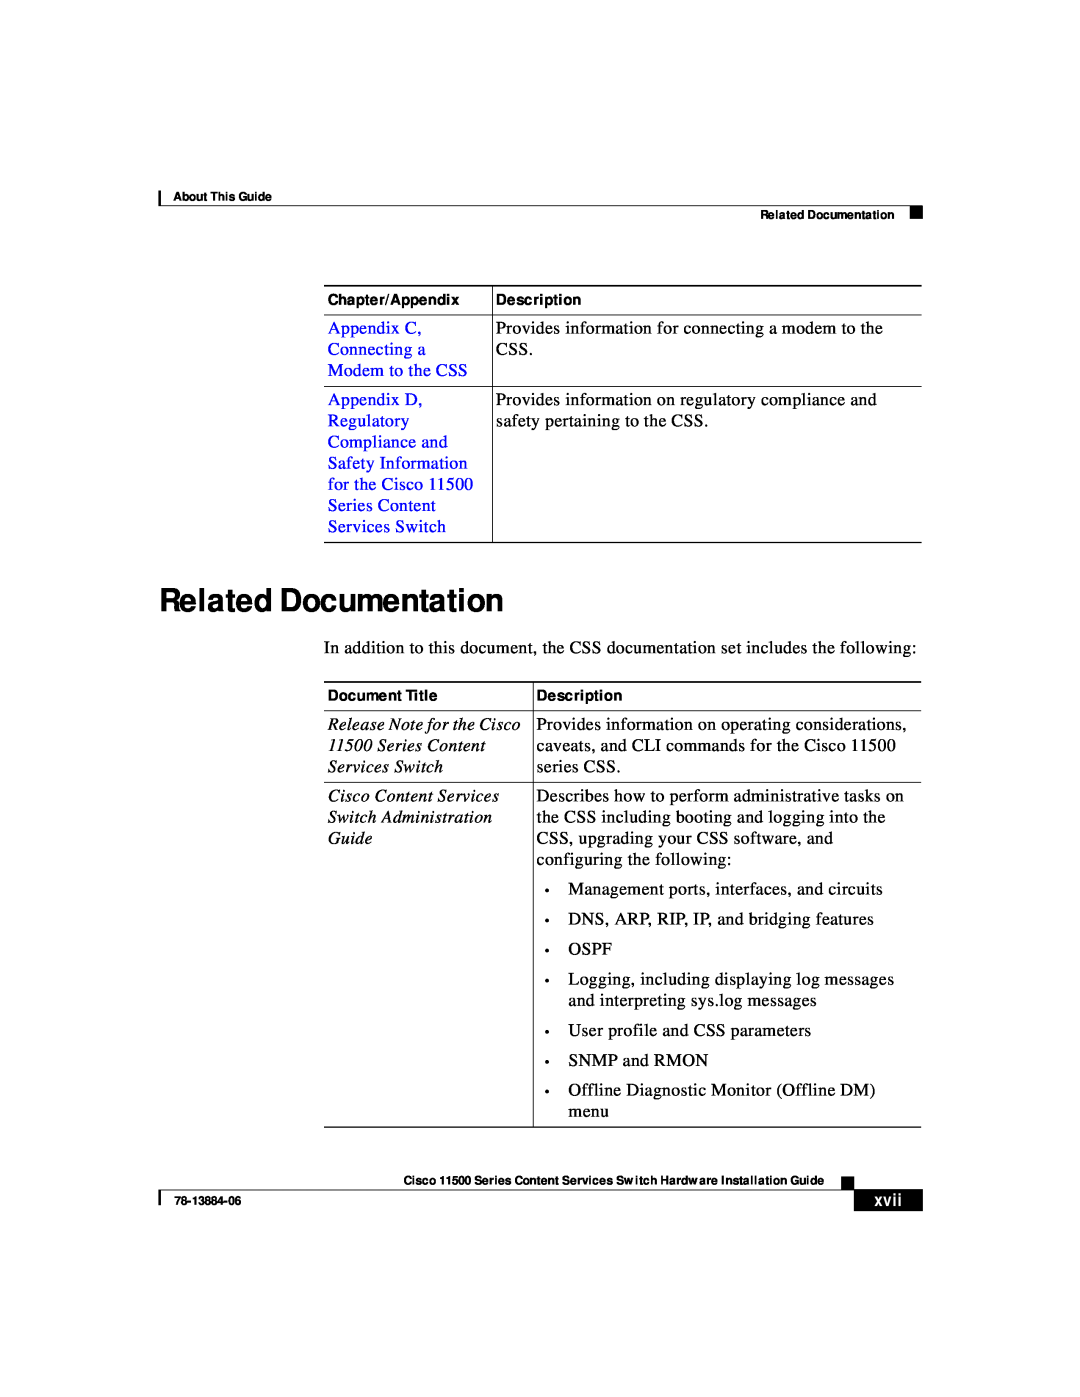 Cisco Systems 11500 Series Related Documentation, Chapter/Appendix, Description, Appendix C, Connecting a, Appendix D 